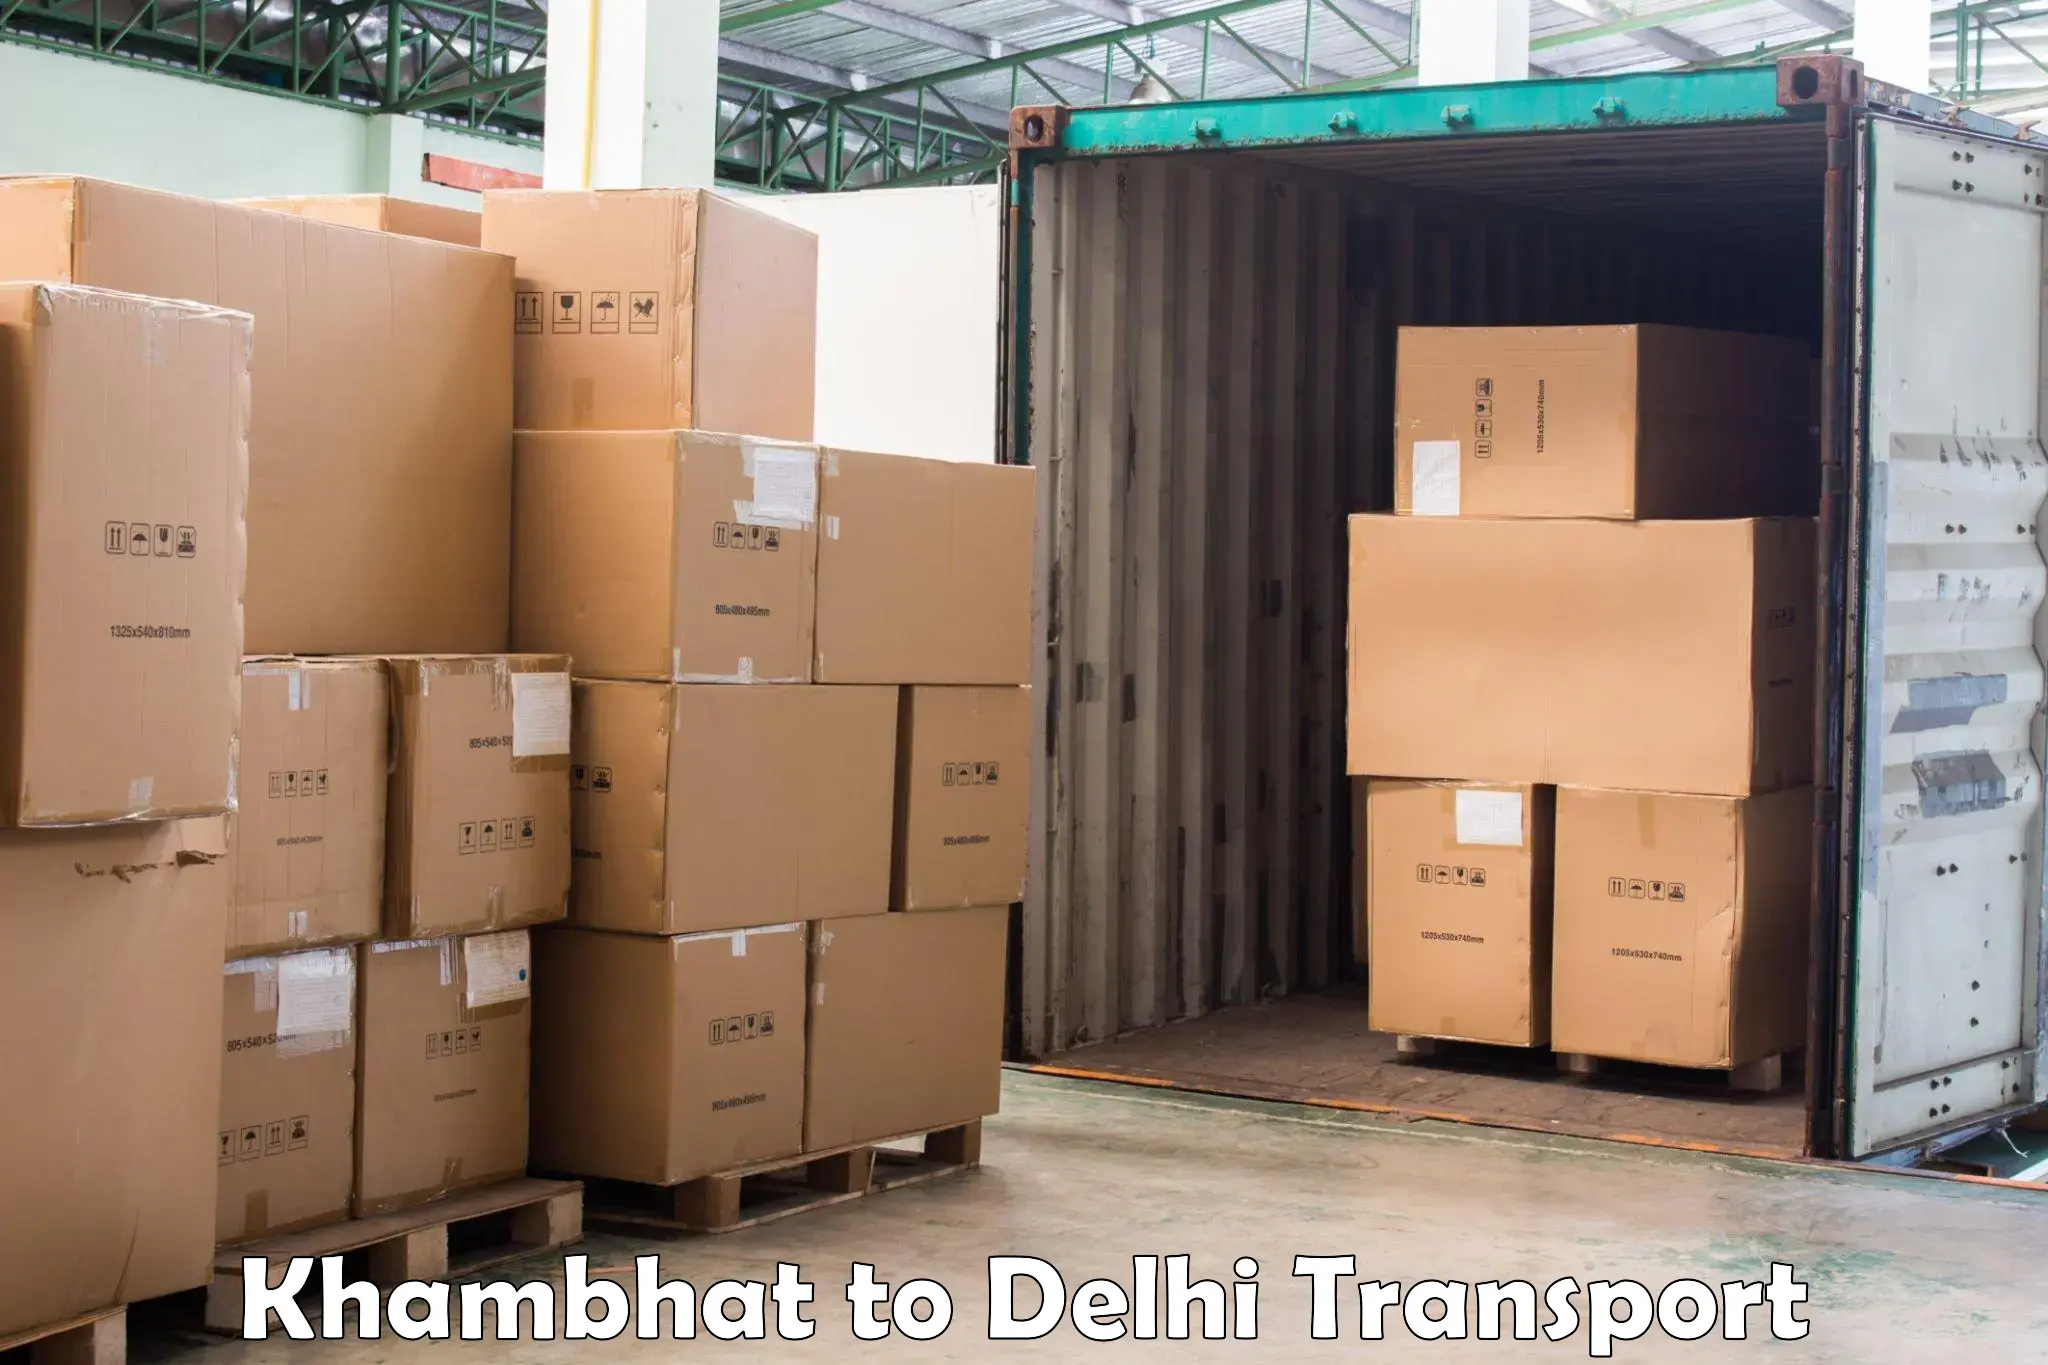 Daily transport service Khambhat to Delhi